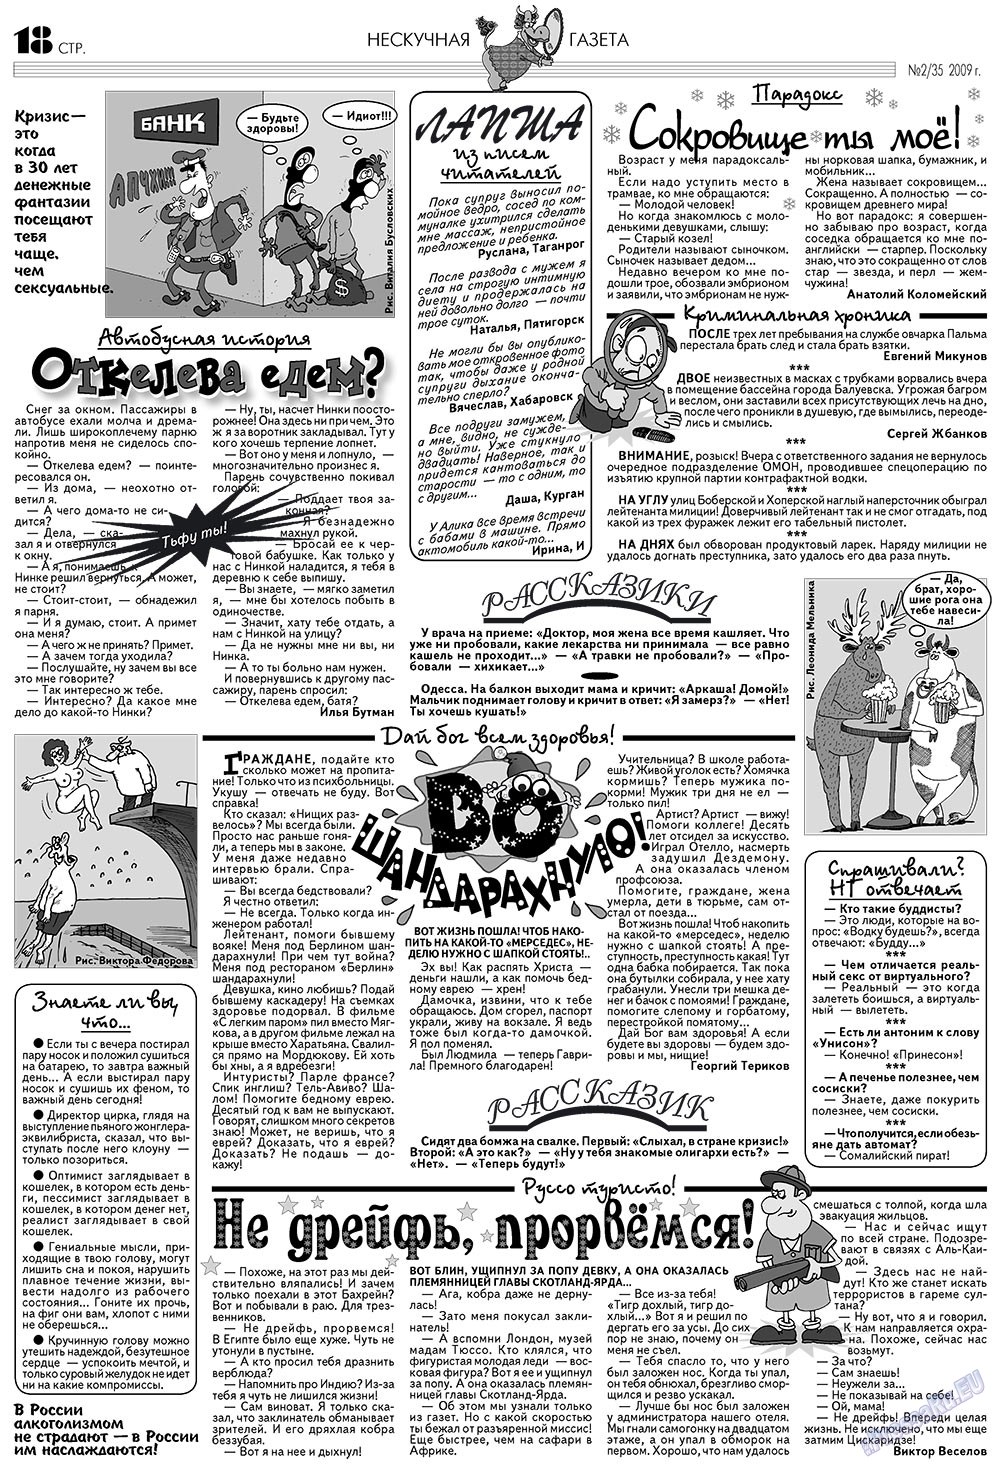 Нескучная газета (журнал). 2009 год, номер 2, стр. 14